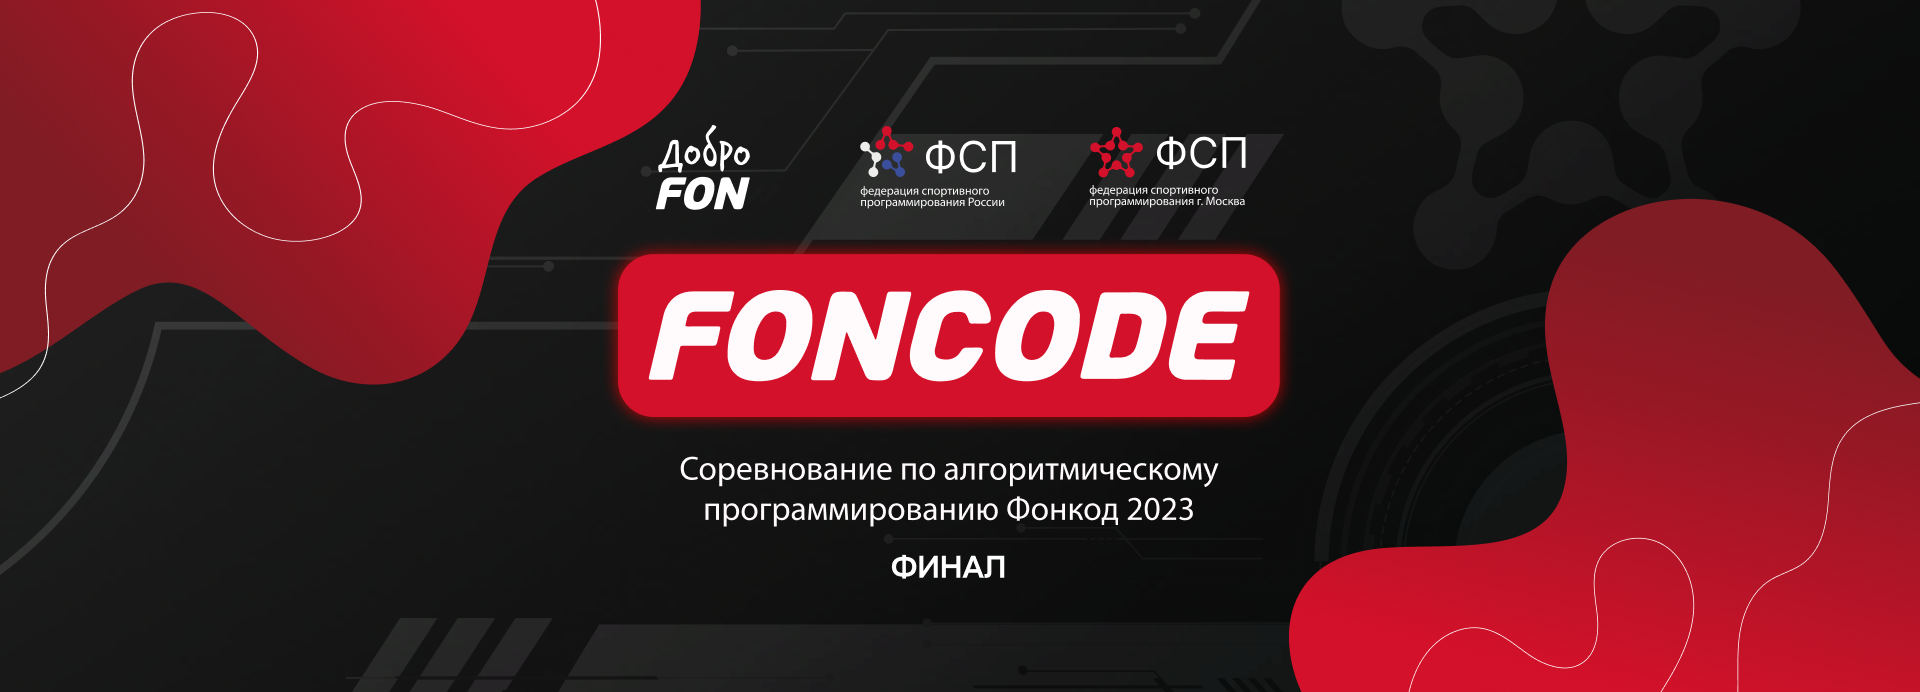 В Москве прошел финал всероссийских соревнований по спортивному программированию